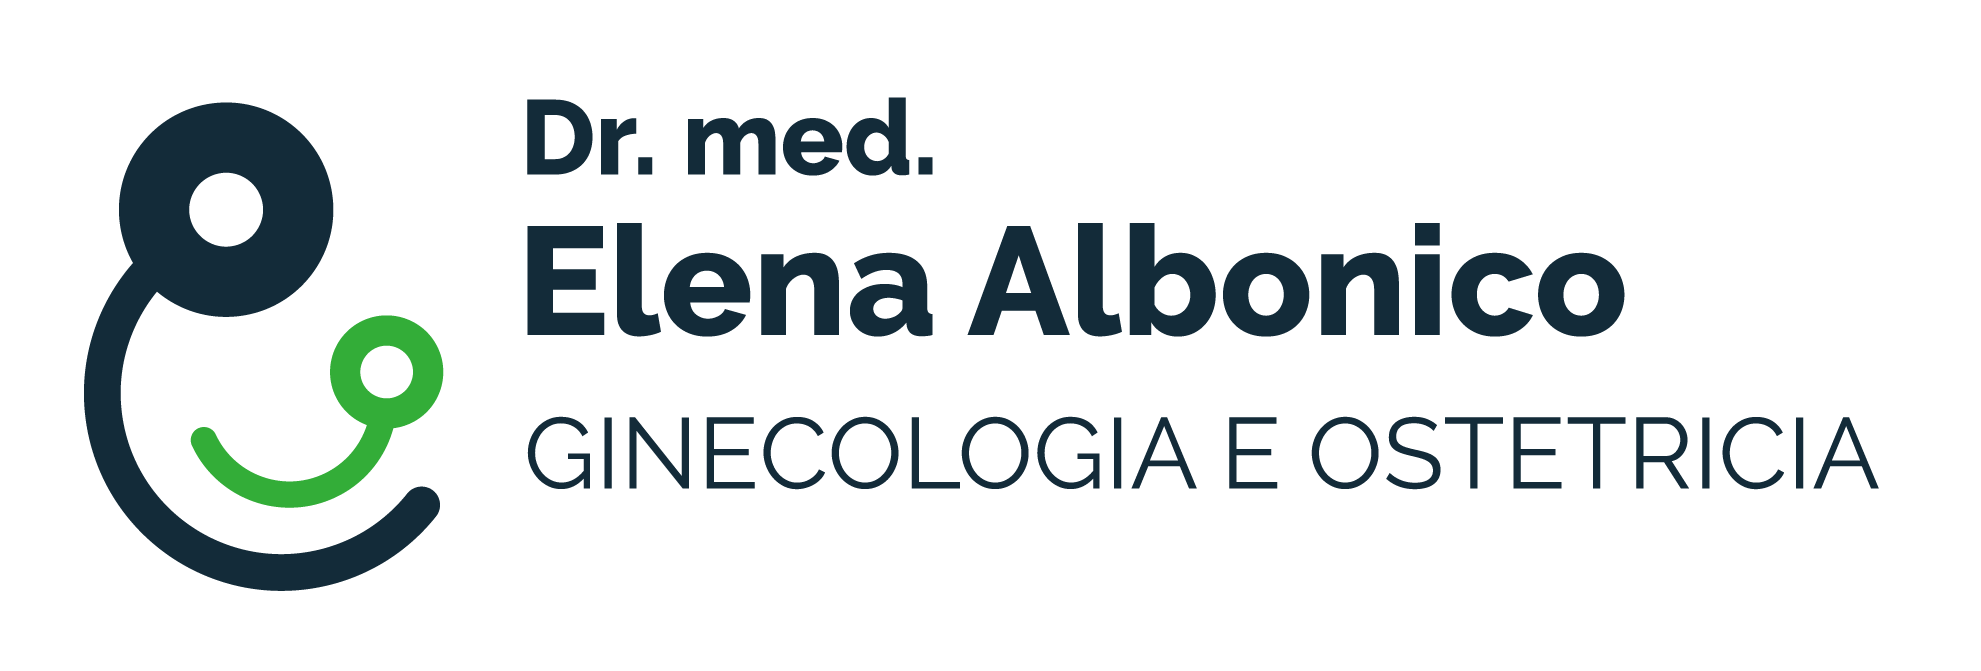 Logo Dr. med. Elena Albonico